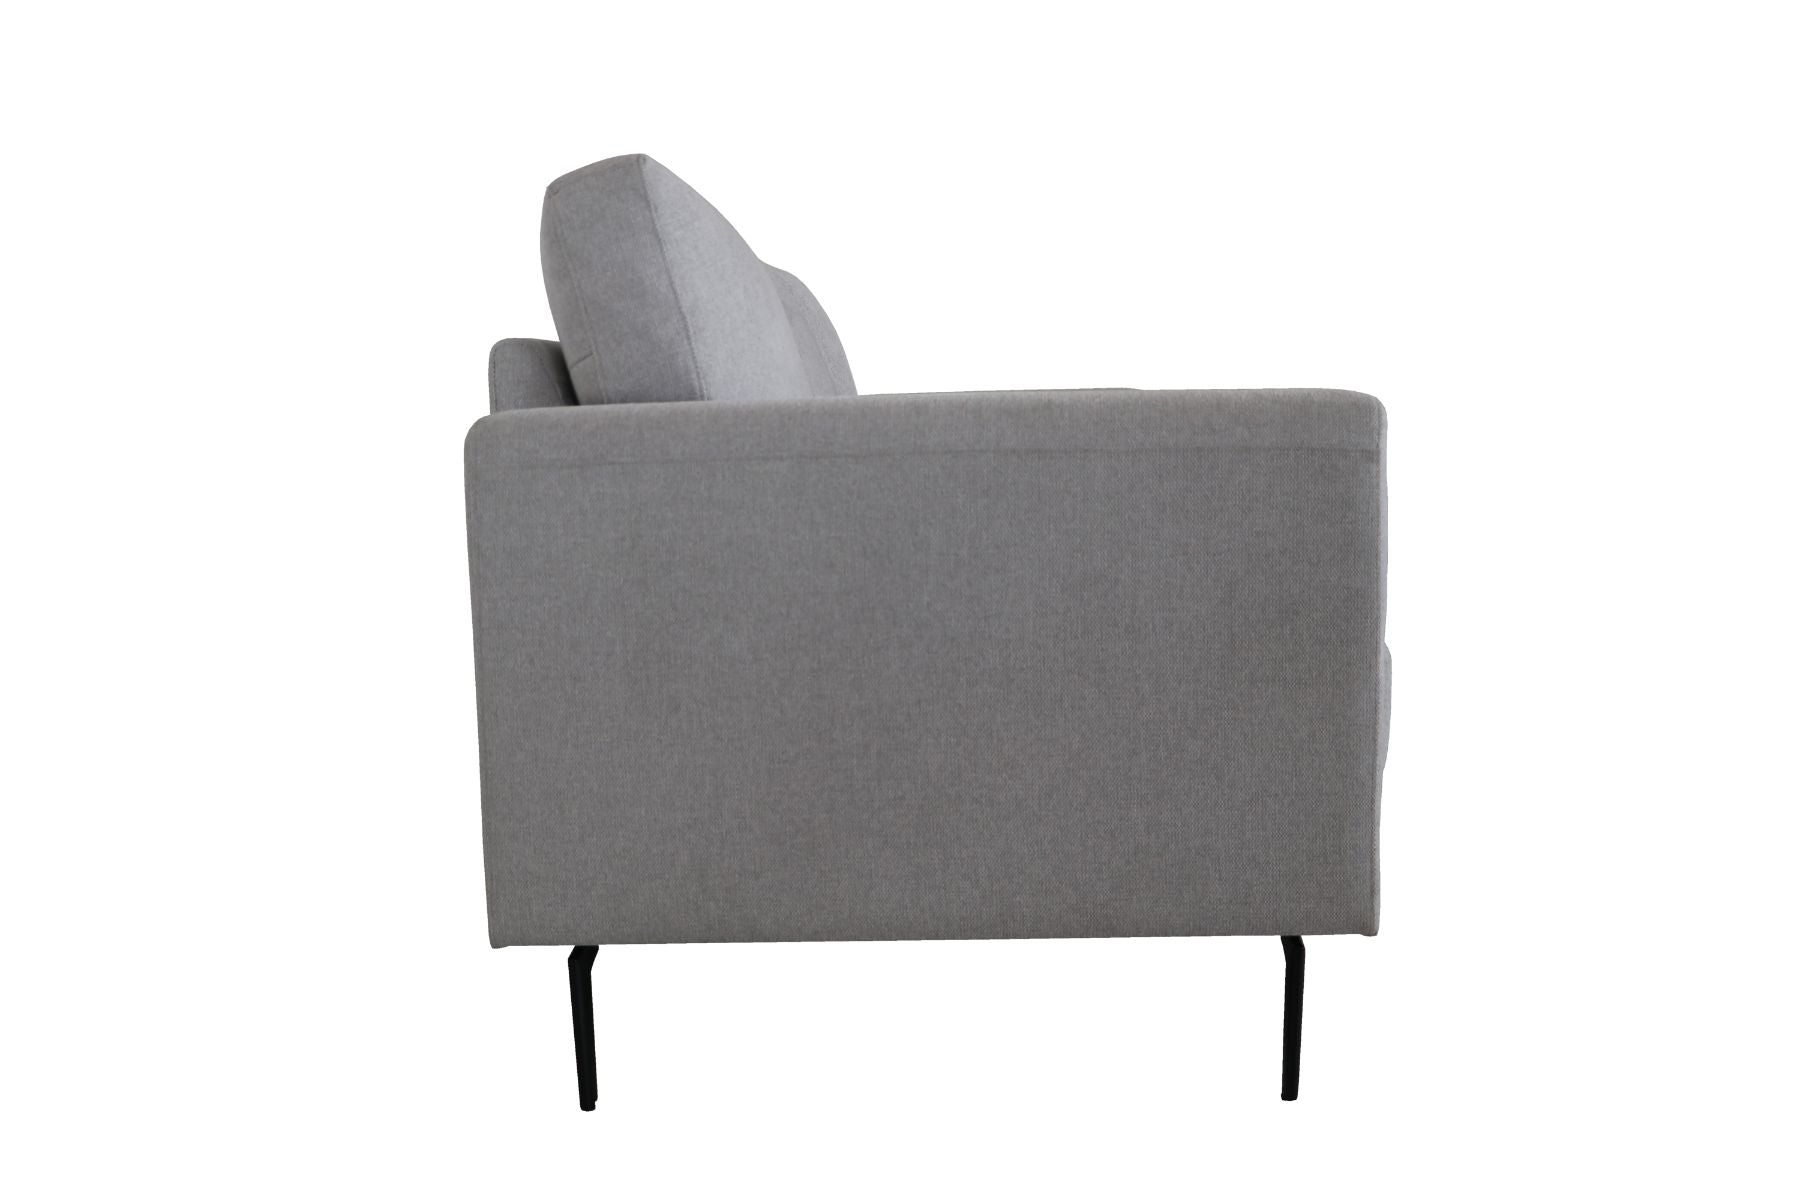 ACME Furniture Sofas & Couches - ACME Kyrene Loveseat, Light Gray Linen